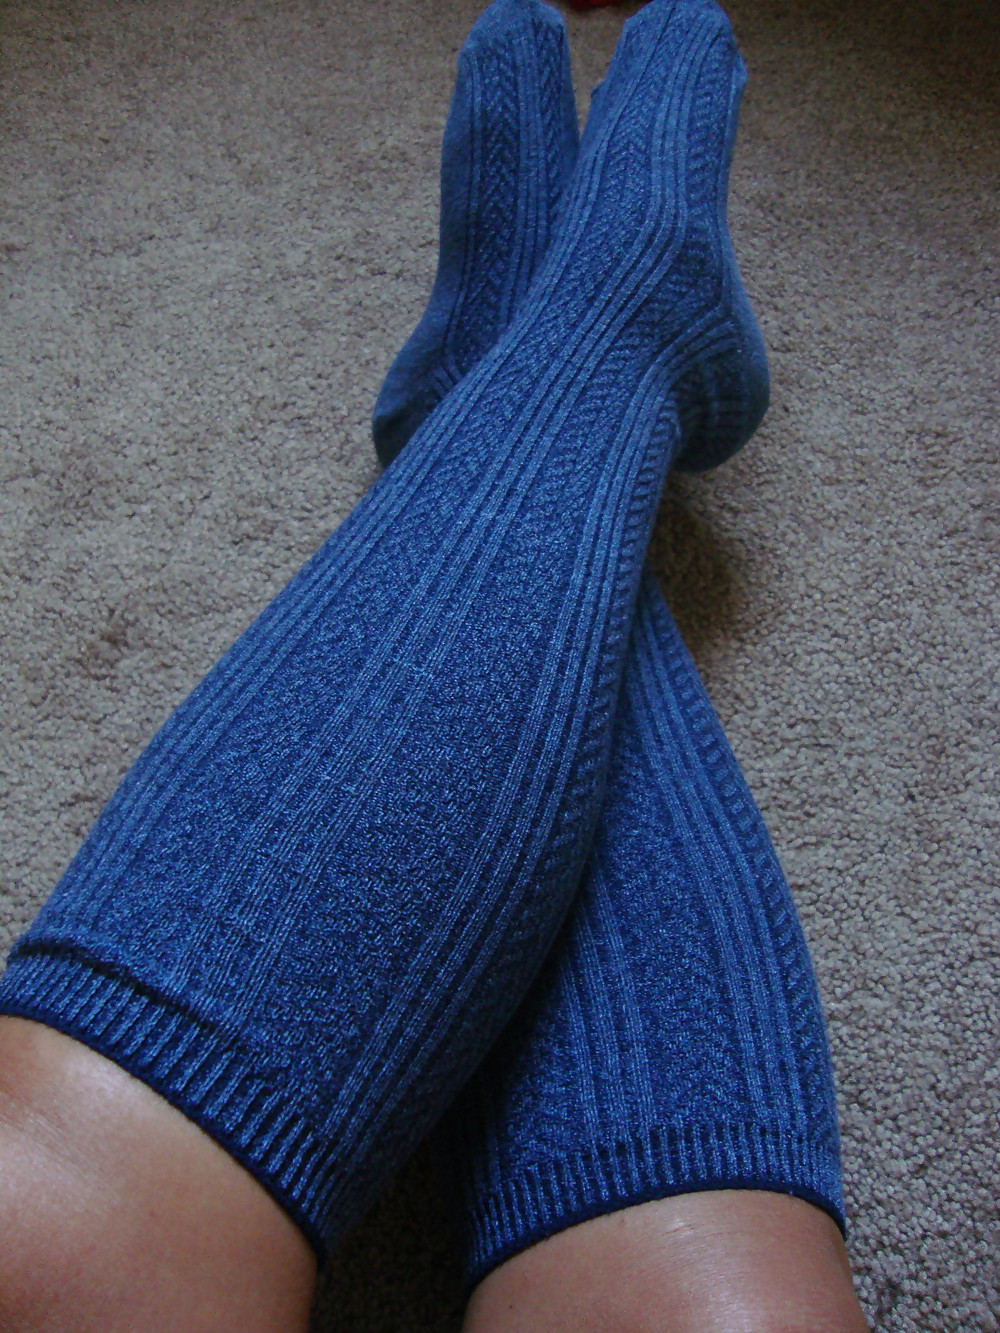 Purple Knee High Socks #37865300